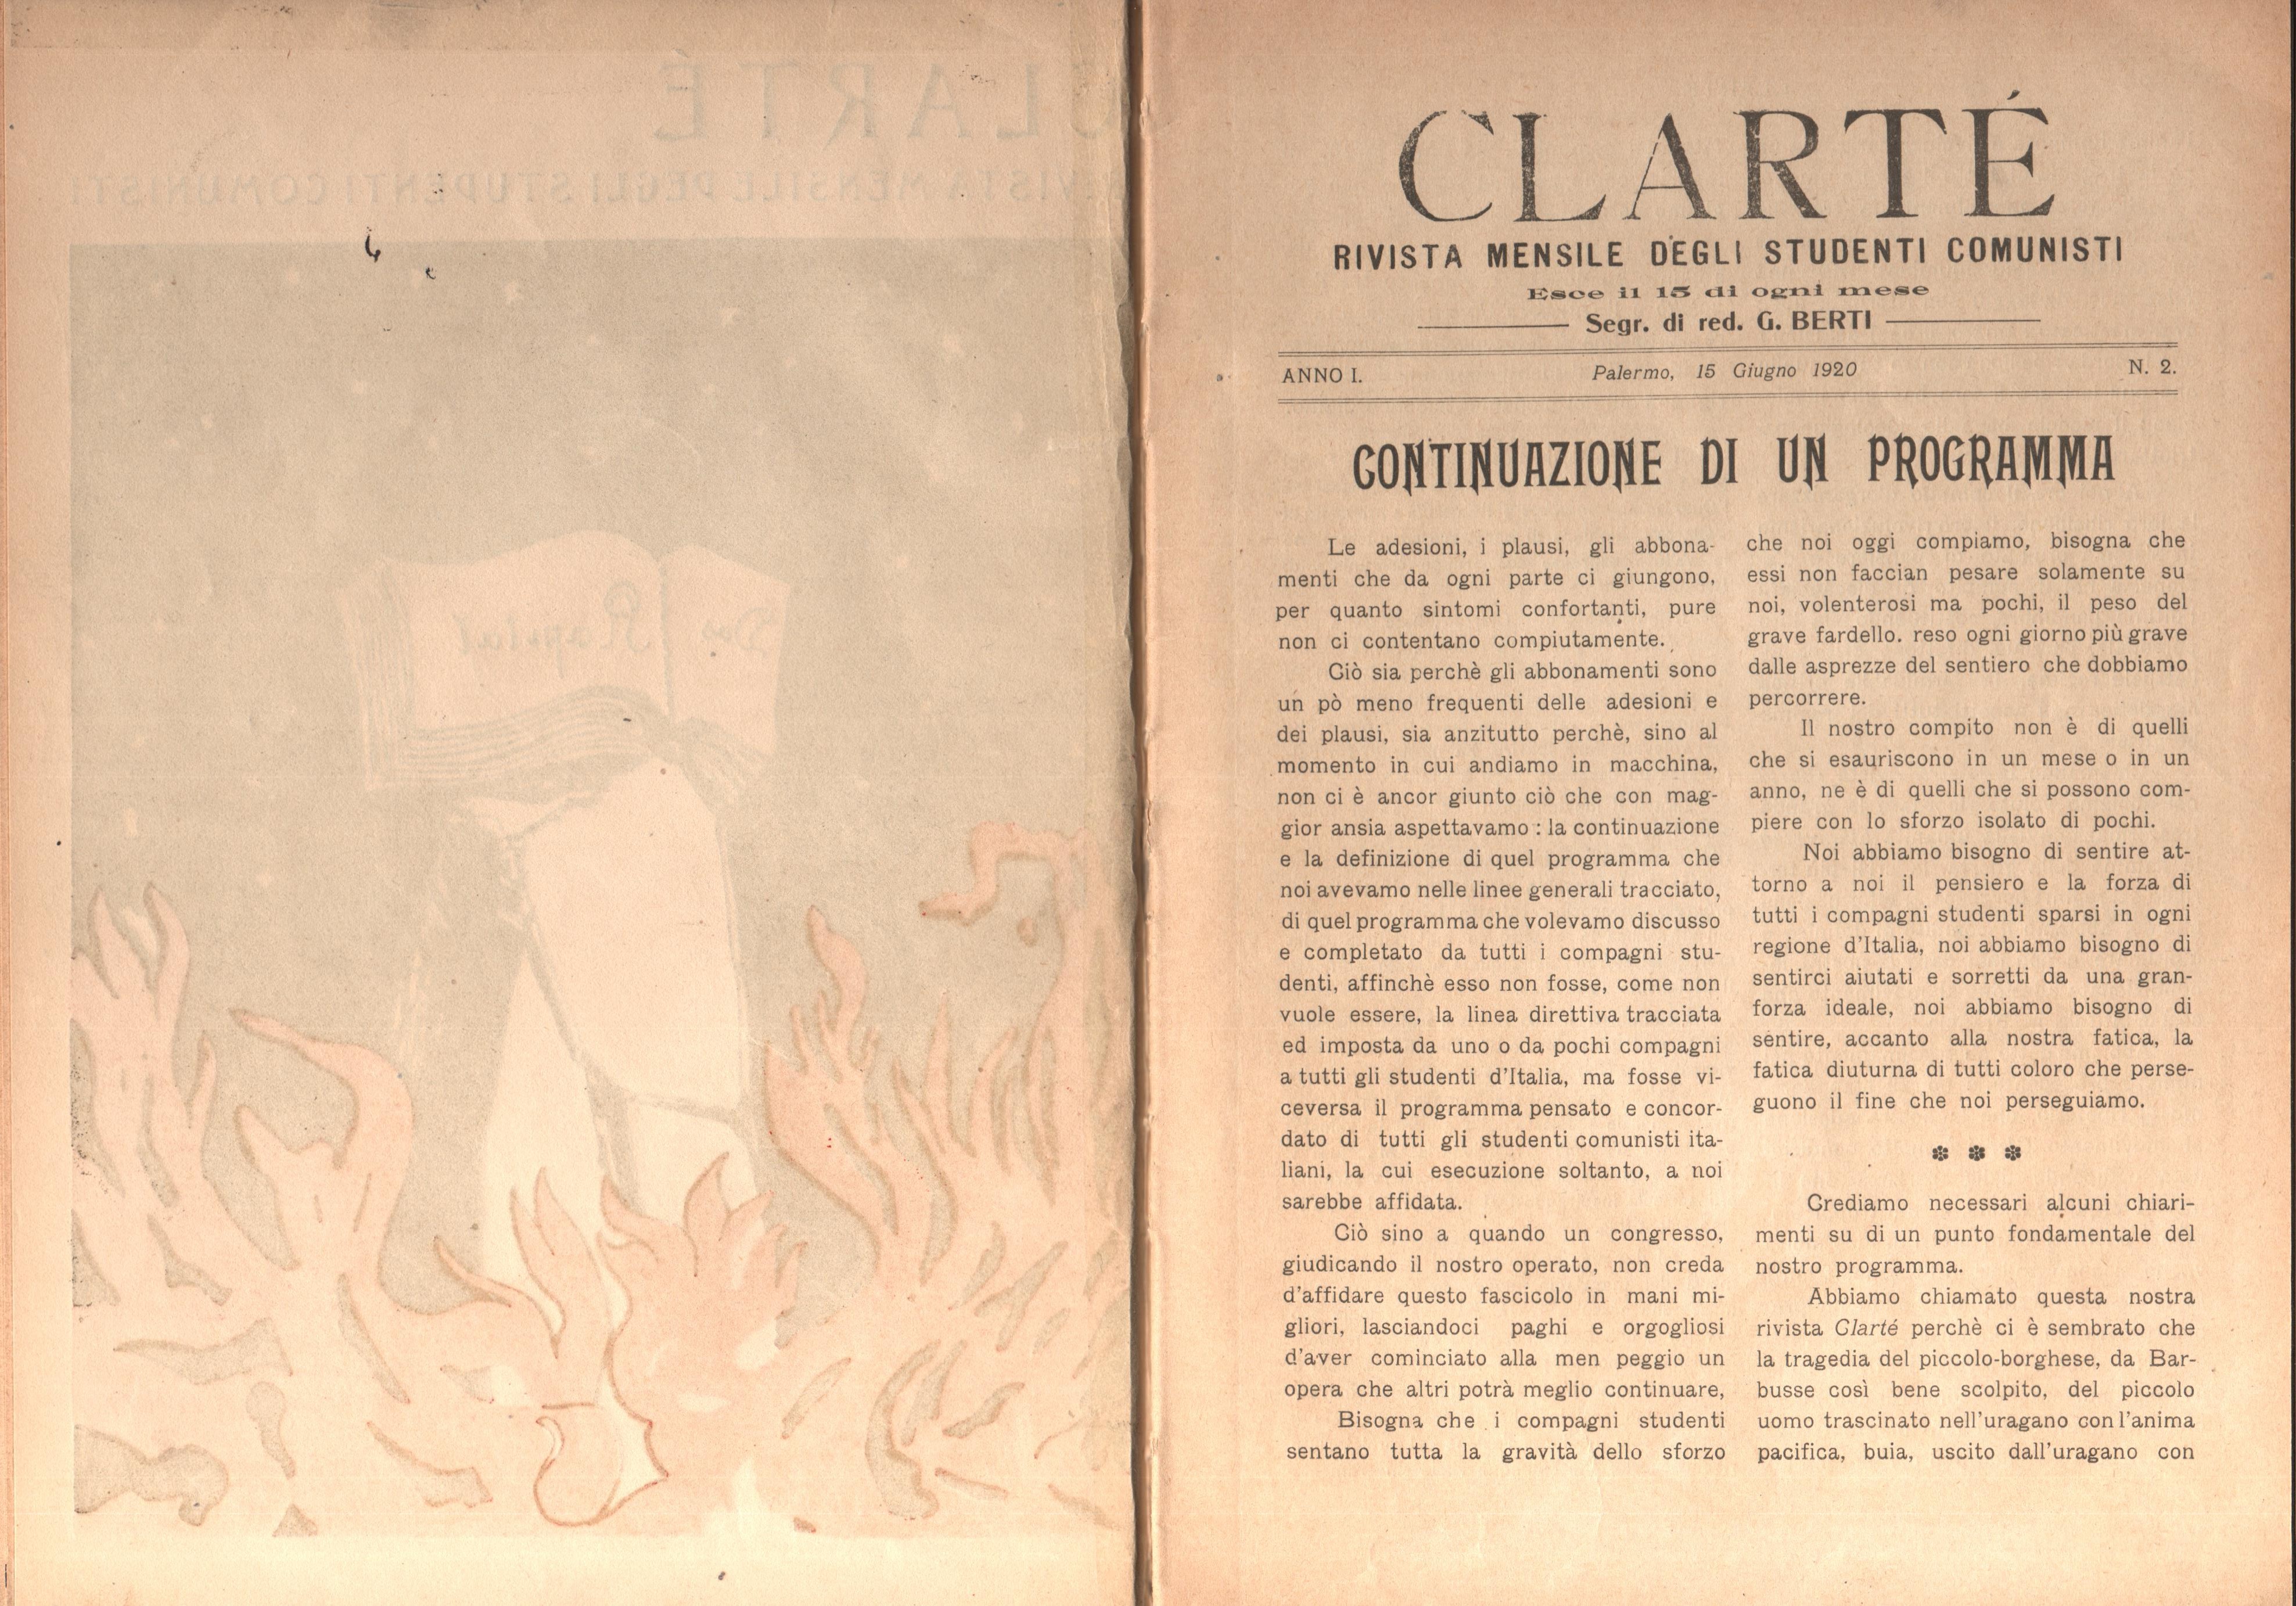 Clarté. Rivista mensile degli studenti comunisti (a. I, n. 2, Palermo, 15 giugno 1920) - pag. 2